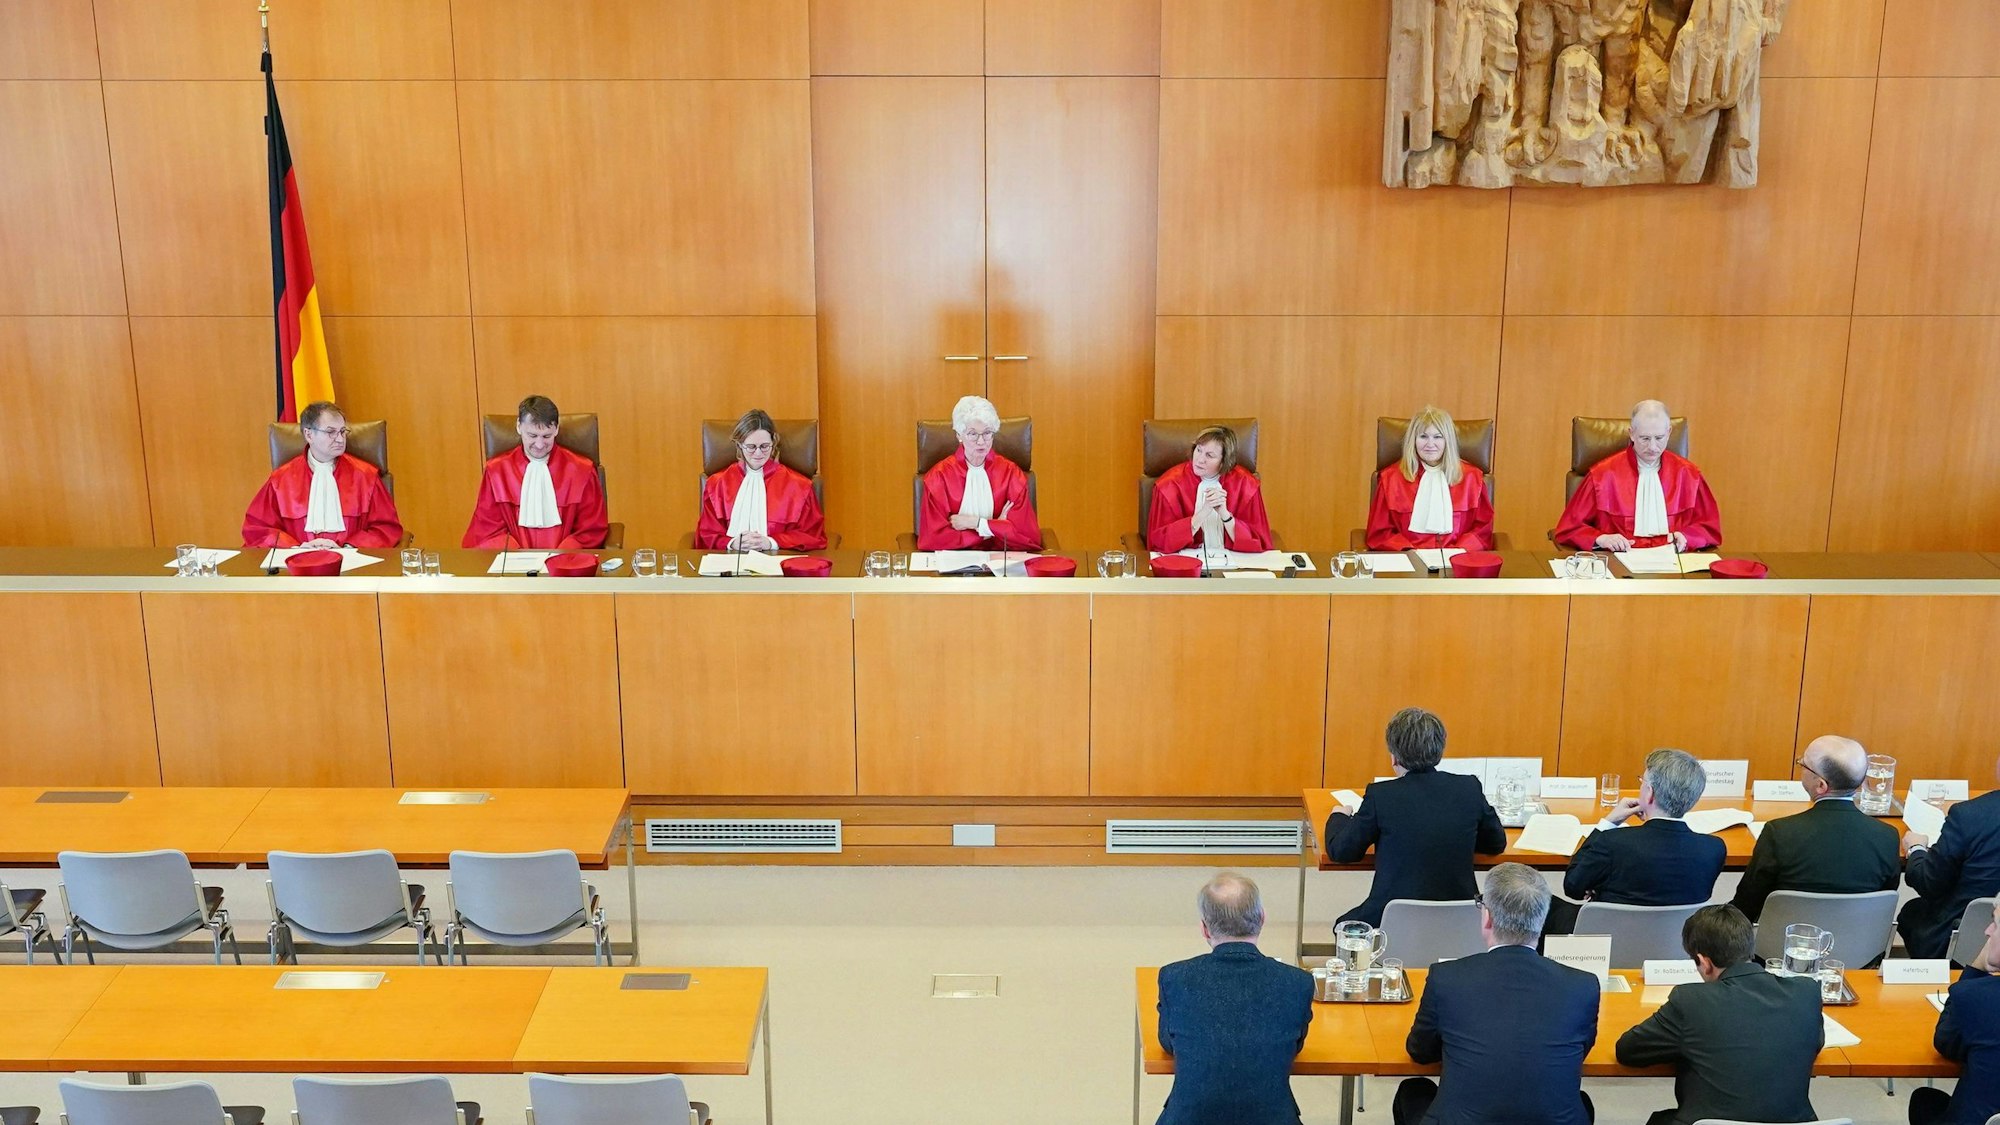 Sieben Verfassungsrichterinnen und -richter in roten Umhängen sitzen in Karlsruhe während einer Verhandlung nebeneinander und blicken in den Saal.